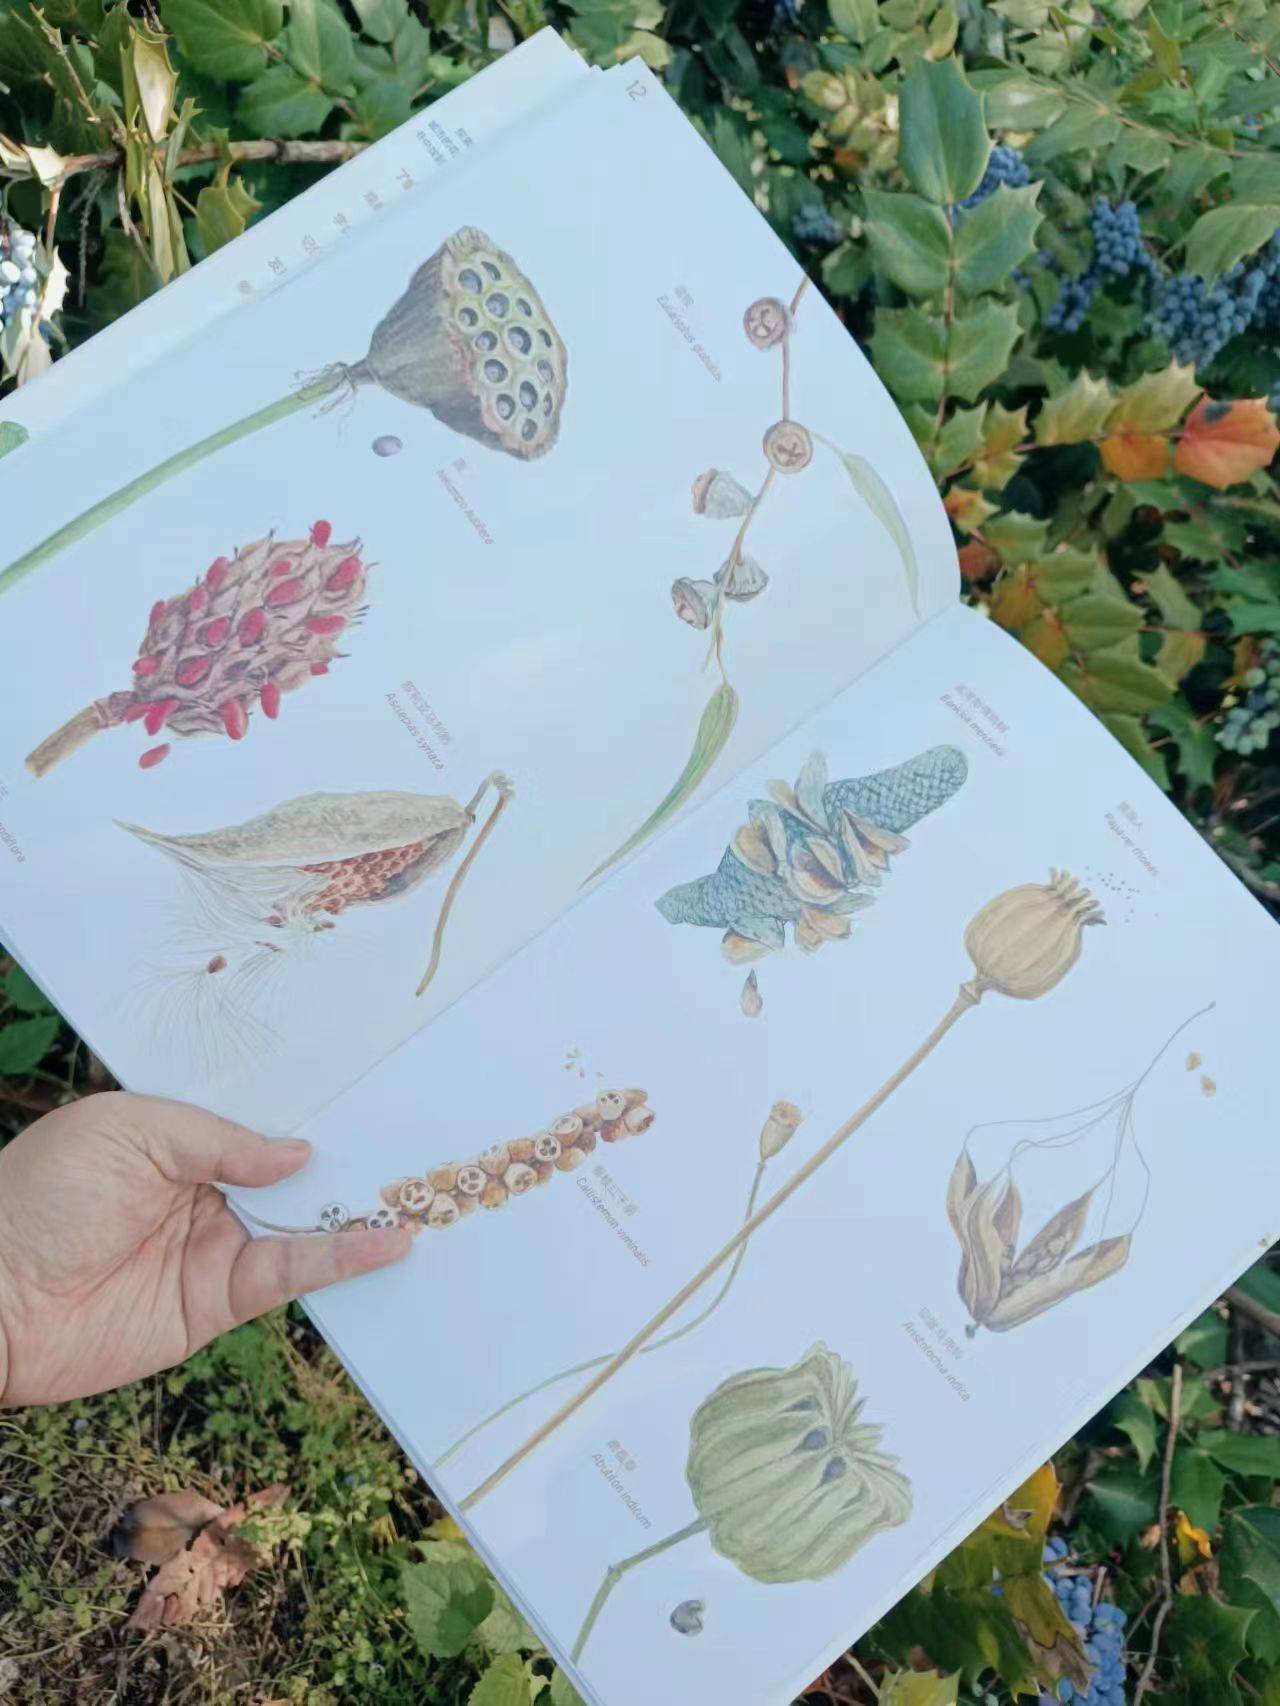 槭树传播种子怎么画图片